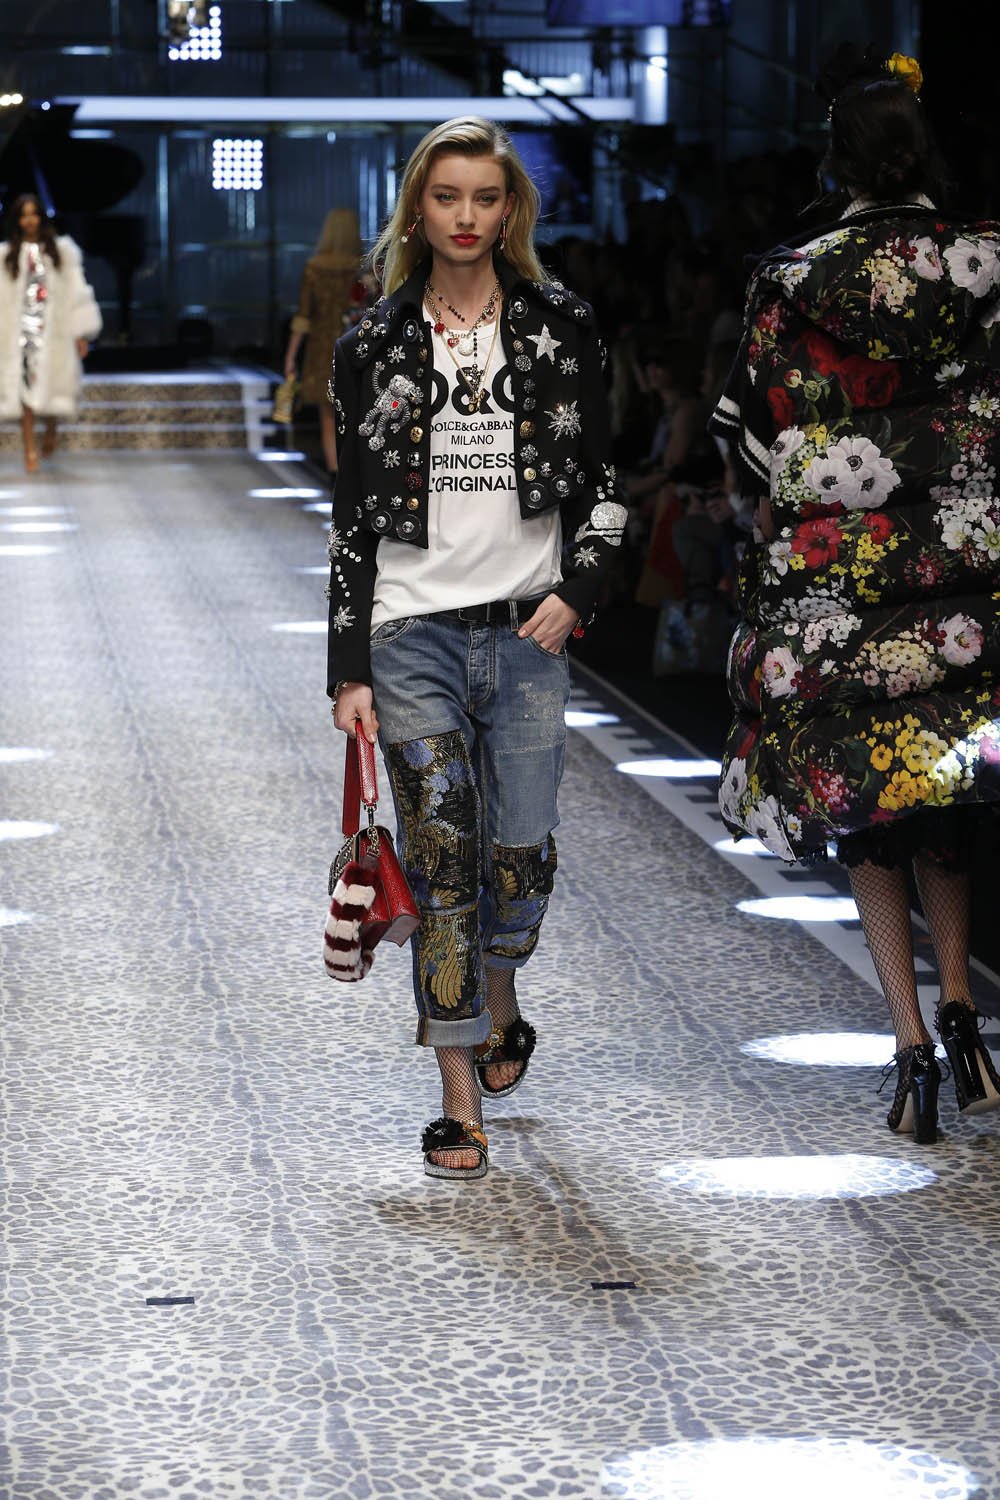 Dolce&Gabbana_women's fashion show fw17-18_Runway_images (52)